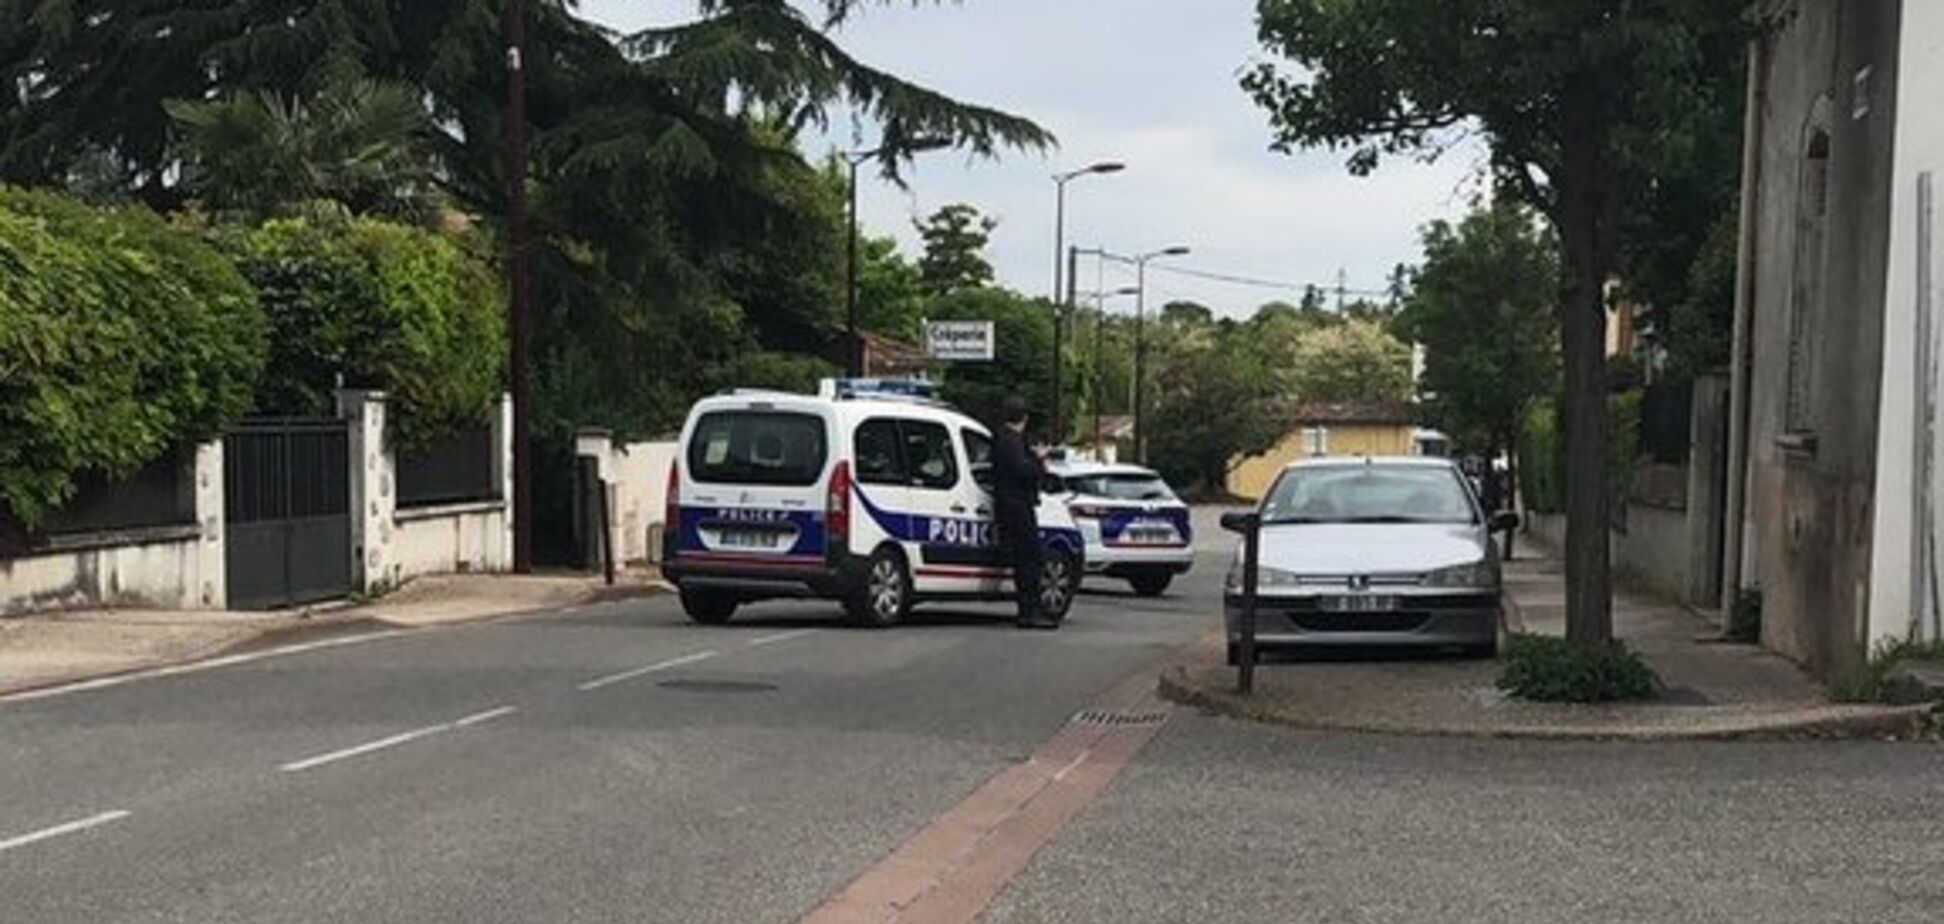 Во Франции произошло нападение с захватом заложников: подробности ЧП